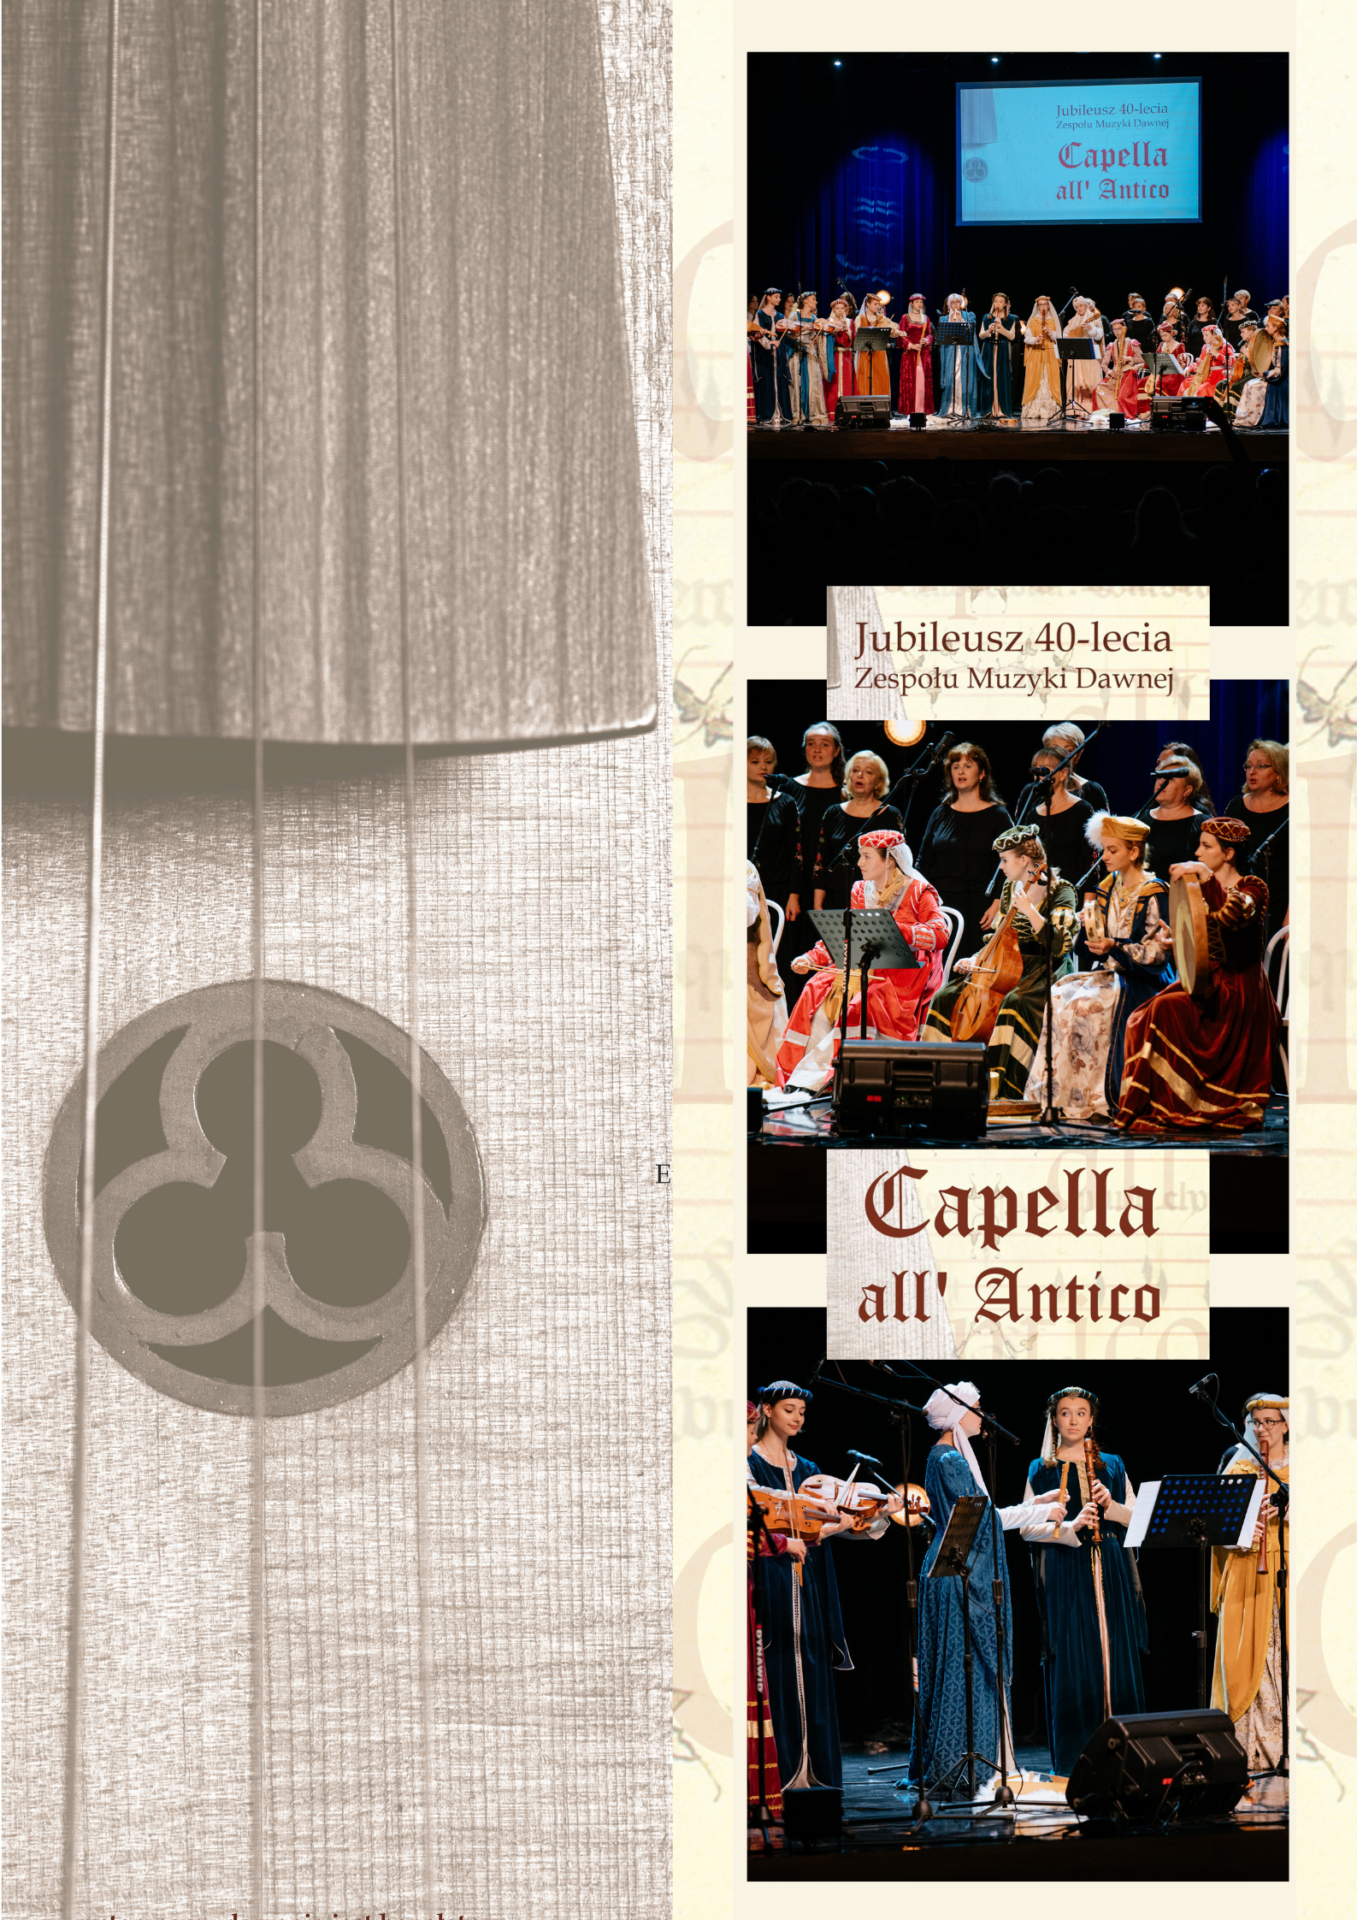 podsumowanie Rok obfitości czyli jubileusz 40-lecia Zespołu Muzyki Dawnej Capella all’ Antico.